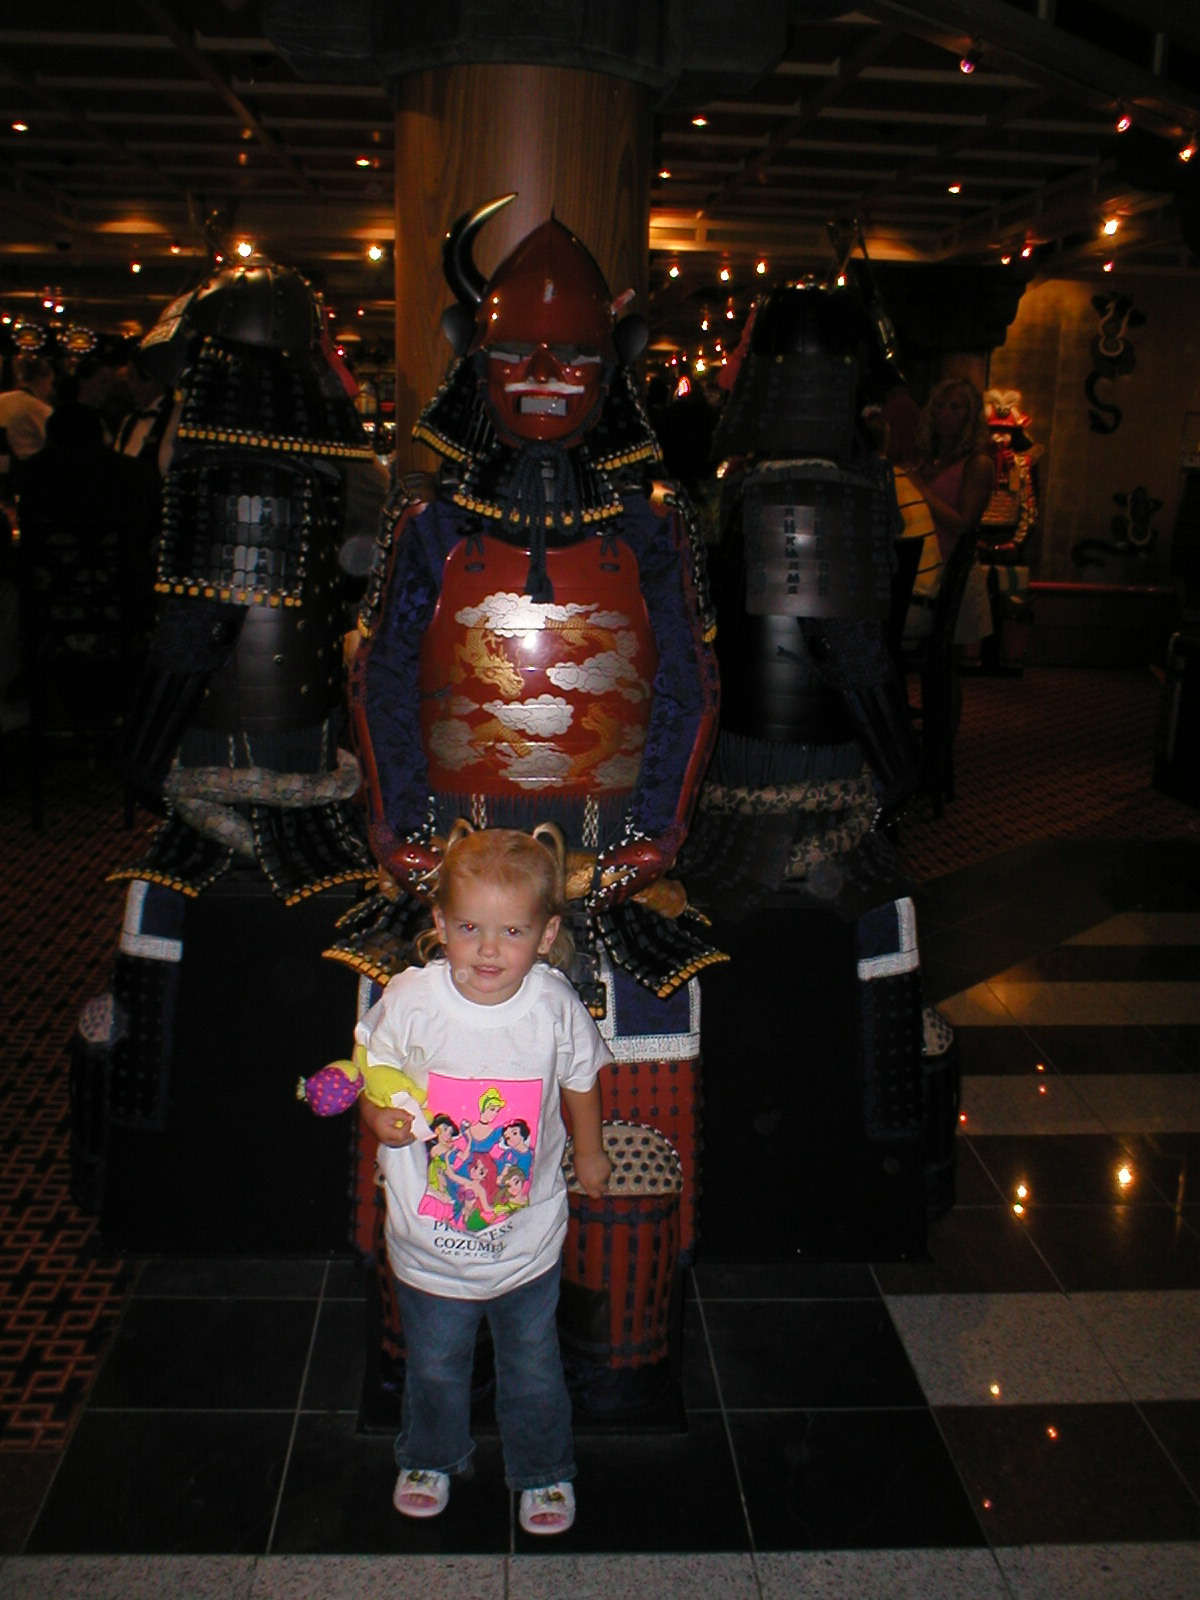 Kaylin and the Shogun in the Casino